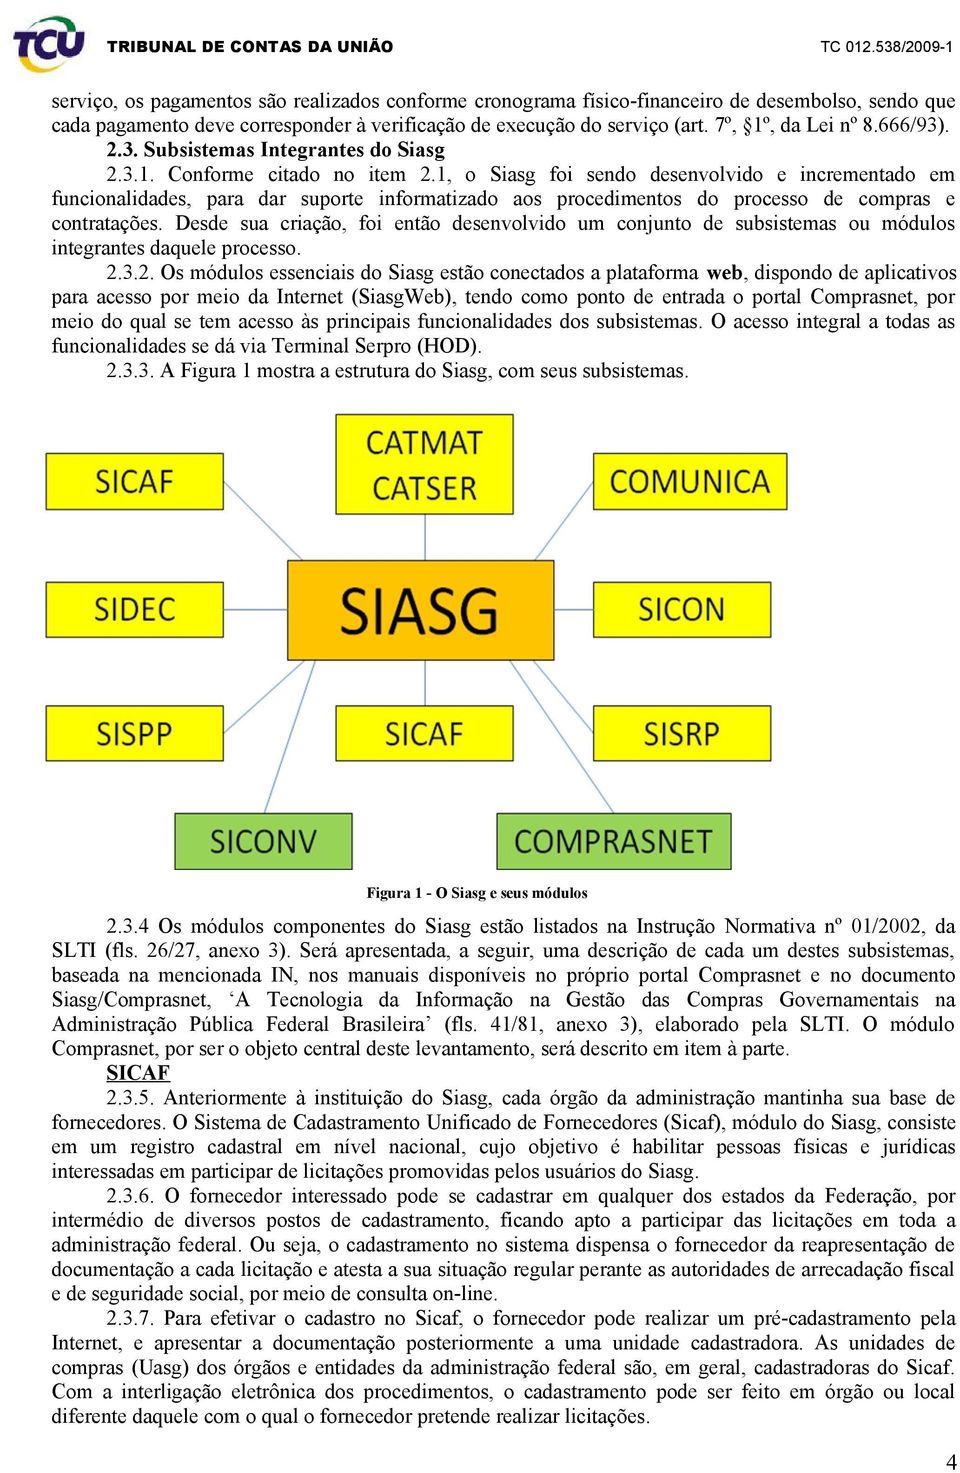 1, o Siasg foi sendo desenvolvido e incrementado em funcionalidades, para dar suporte informatizado aos procedimentos do processo de compras e contratações.